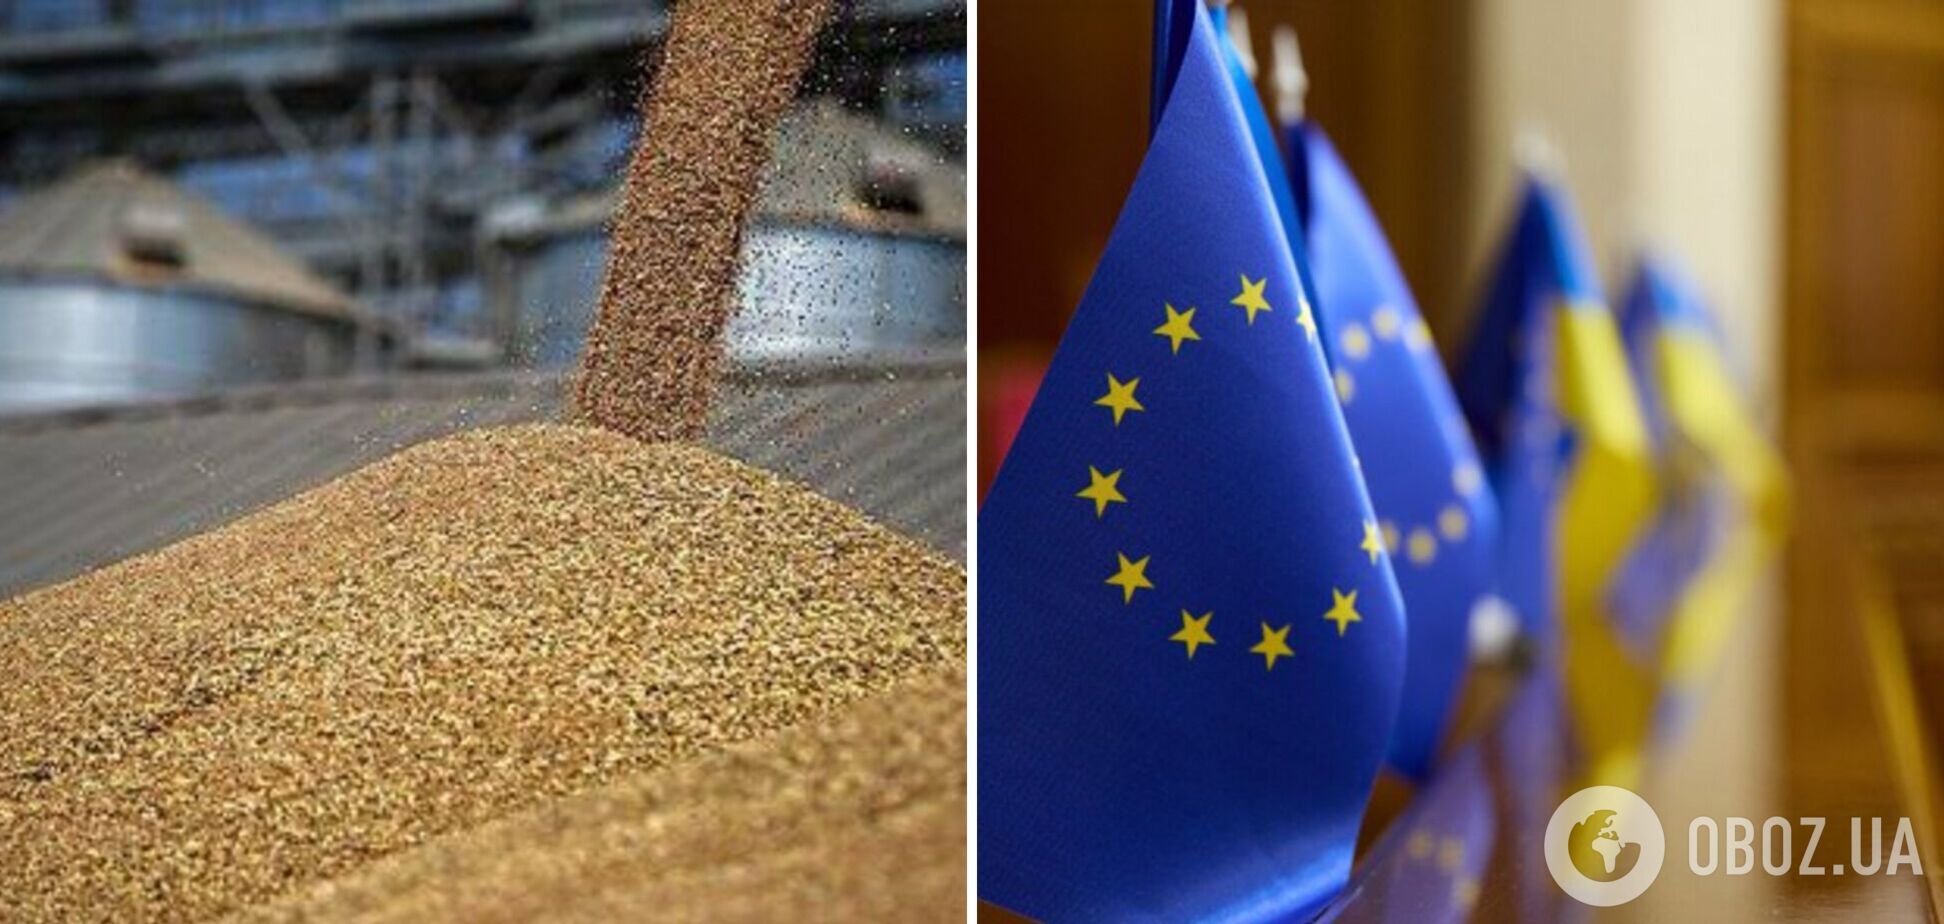  ЄС розглядає можливість виступити на захист Польщі, Угорщини та Словаччини у рамках справи щодо українського зерна у СОТ